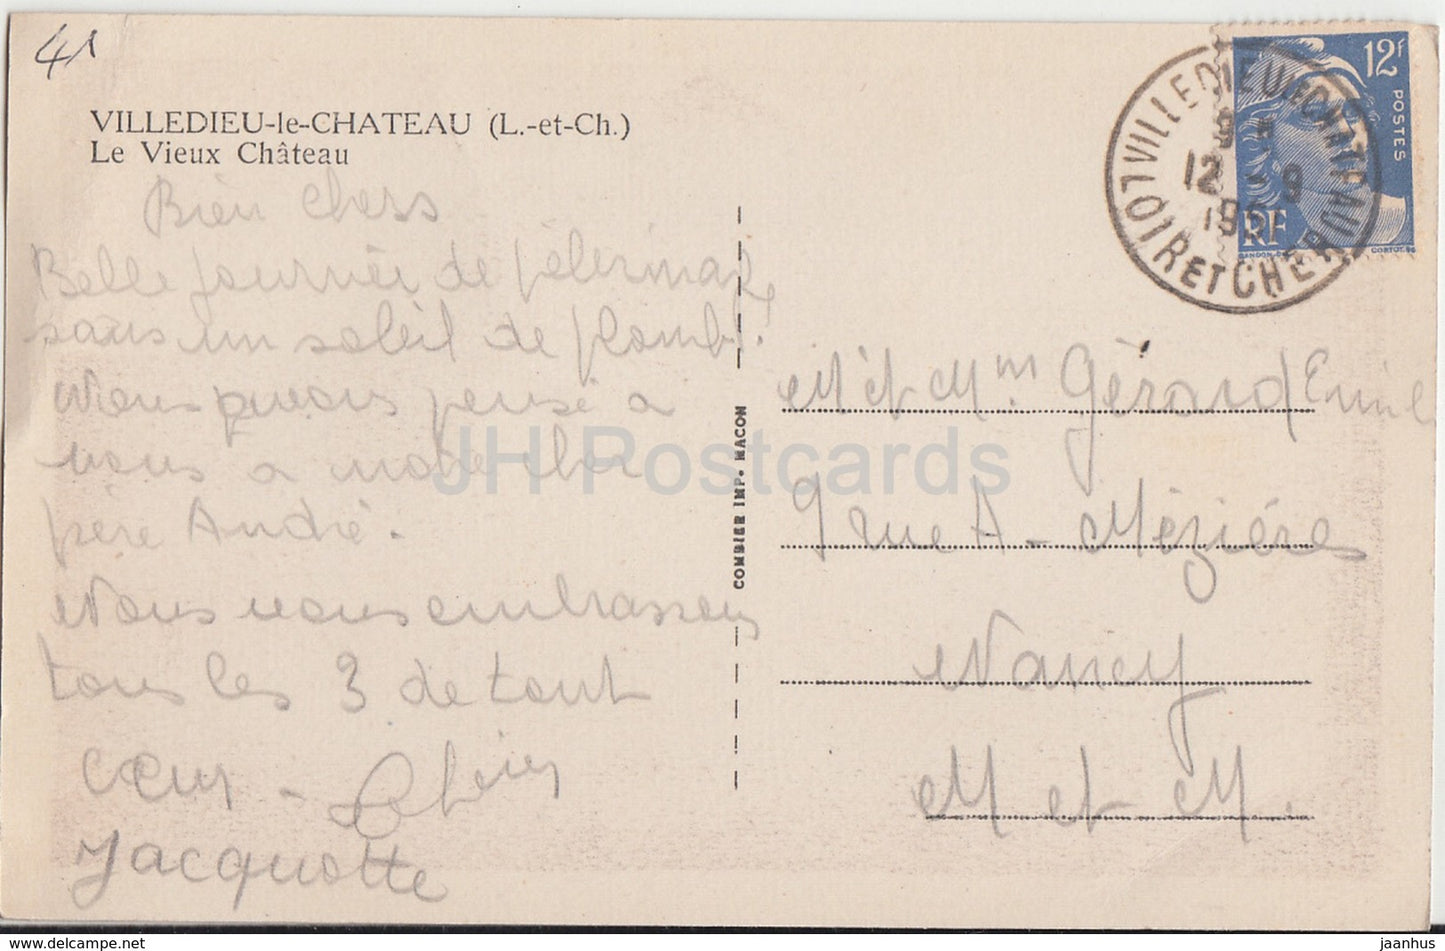 Villedieu le Château - Le Vieux Château - château - 1951 - carte postale ancienne - France - utilisé